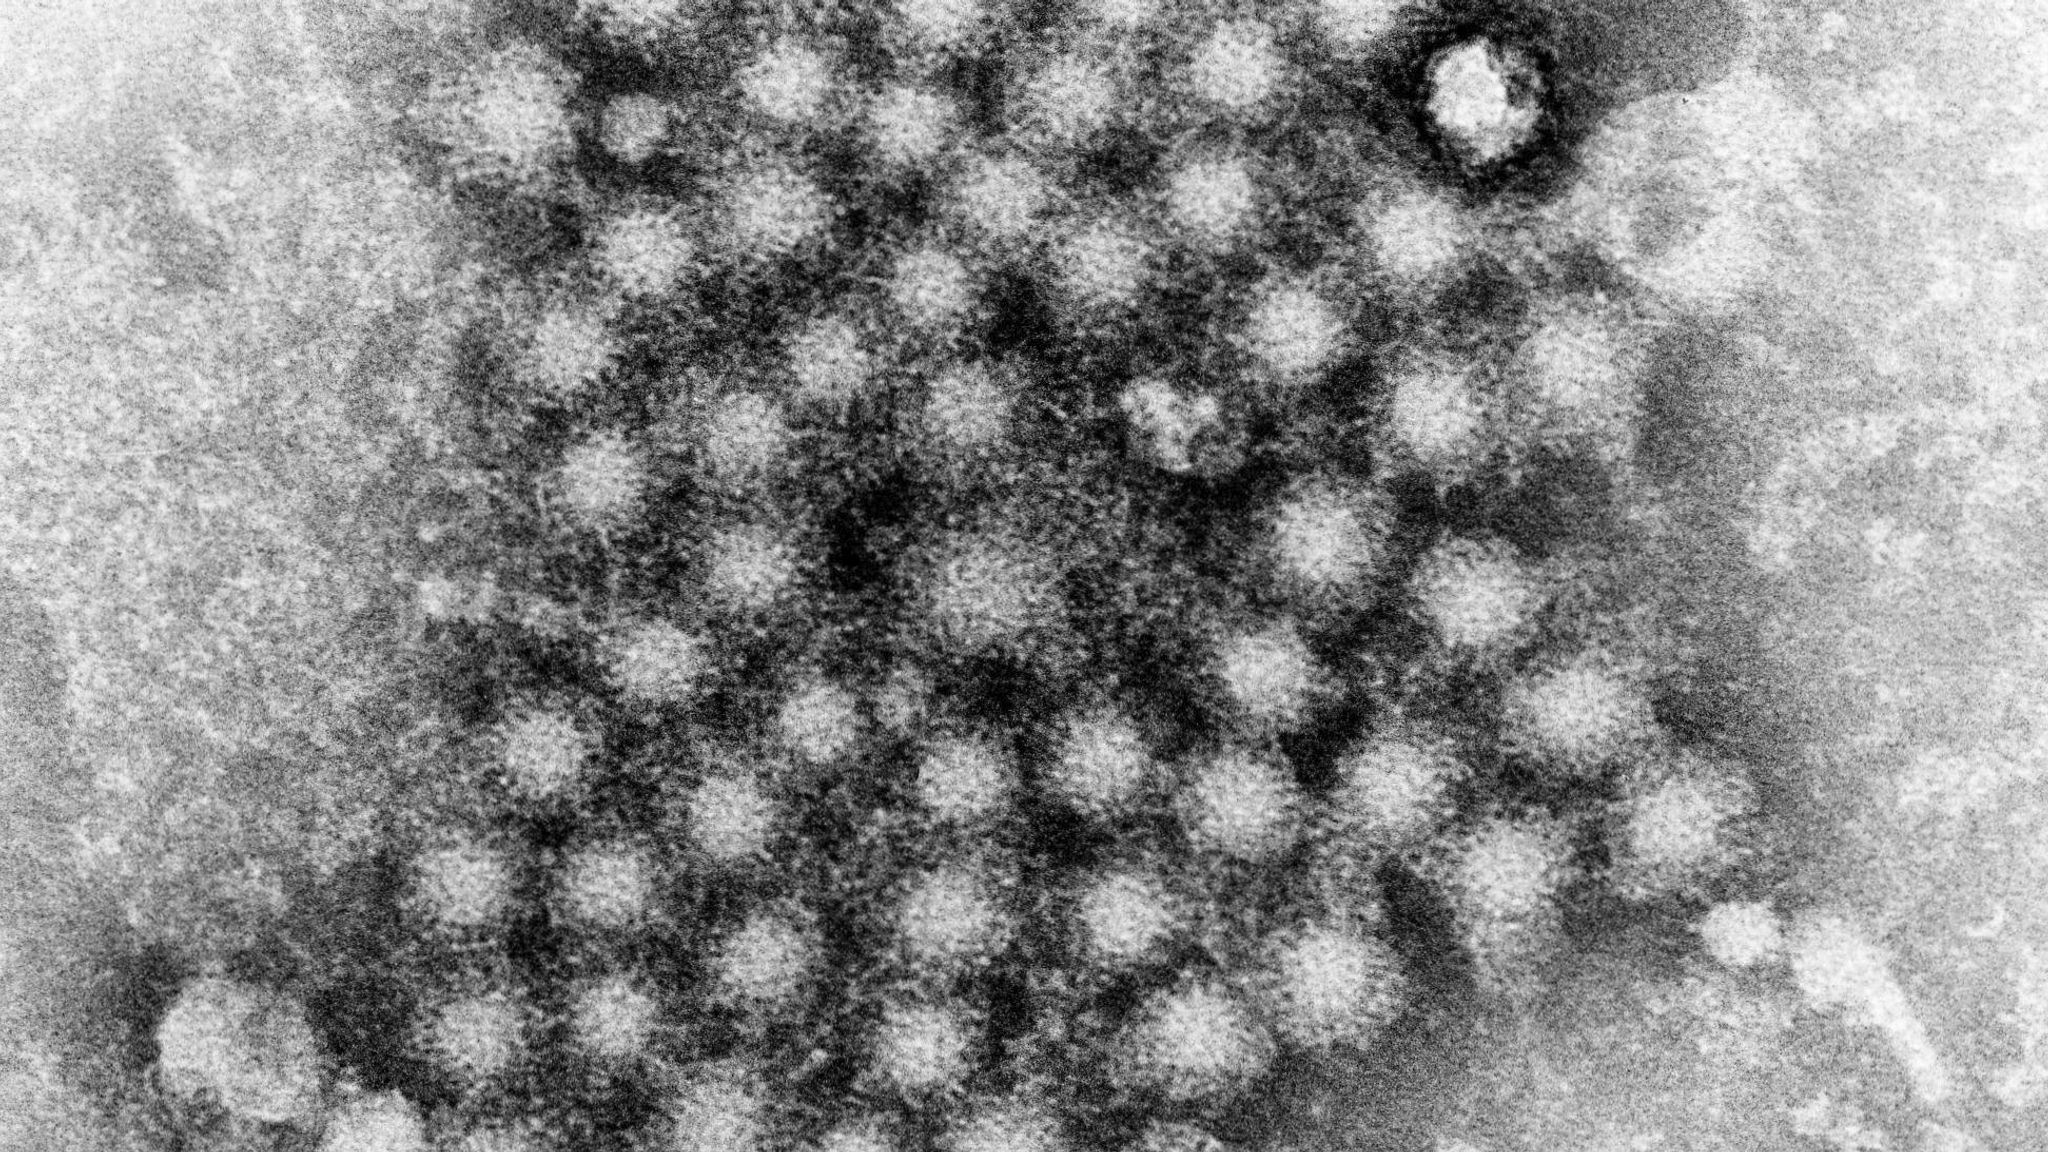 Вирус гриппа под. Вирус гриппа микрофотография. Электронная микрофотография вируса гриппа а. Вирус гепатита микрофотография. Вирус гепатита б под микроскопом.